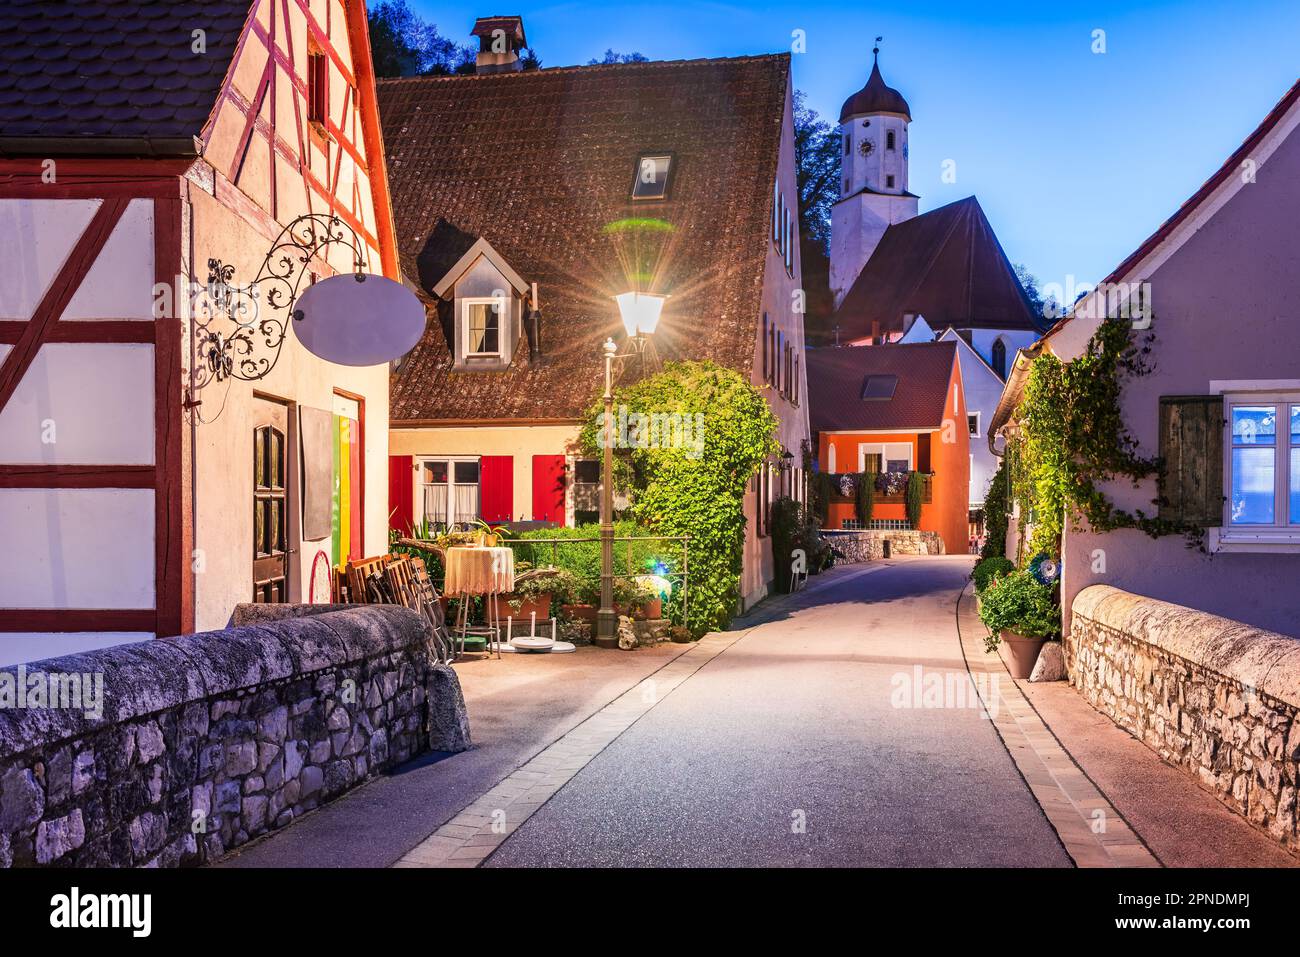 Harburg, Allemagne. Charmante ville de Bavière avec des rues pittoresques, heure bleue magique, ciel peint dans des tons de bleu et d'orange. Banque D'Images